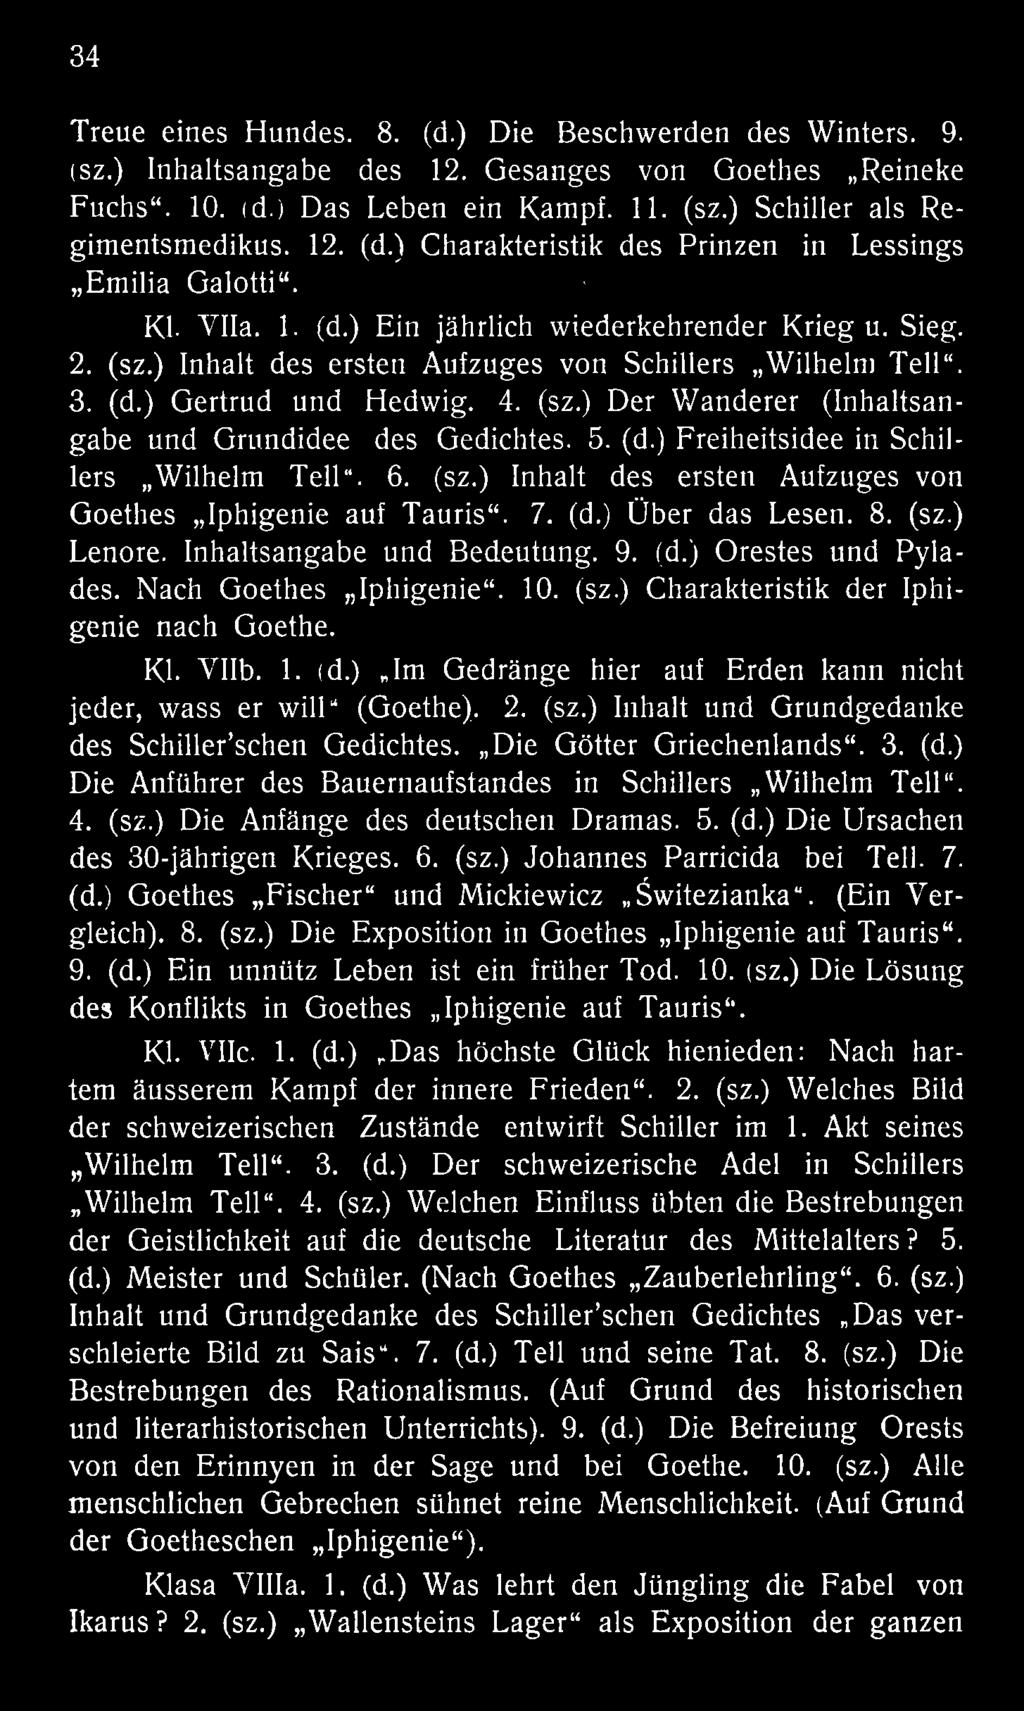 Die Götter Griechenlands. 3. (d.) Die Anführer des Bauernaufstandes in Schillers Wilhelm Teil. 4. (sz.) Die Anfänge des deutschen Dramas. 5. (d.) Die Ursachen des 30-jährigen Krieges. 6. (sz.) Johannes Parricida bei Teil.